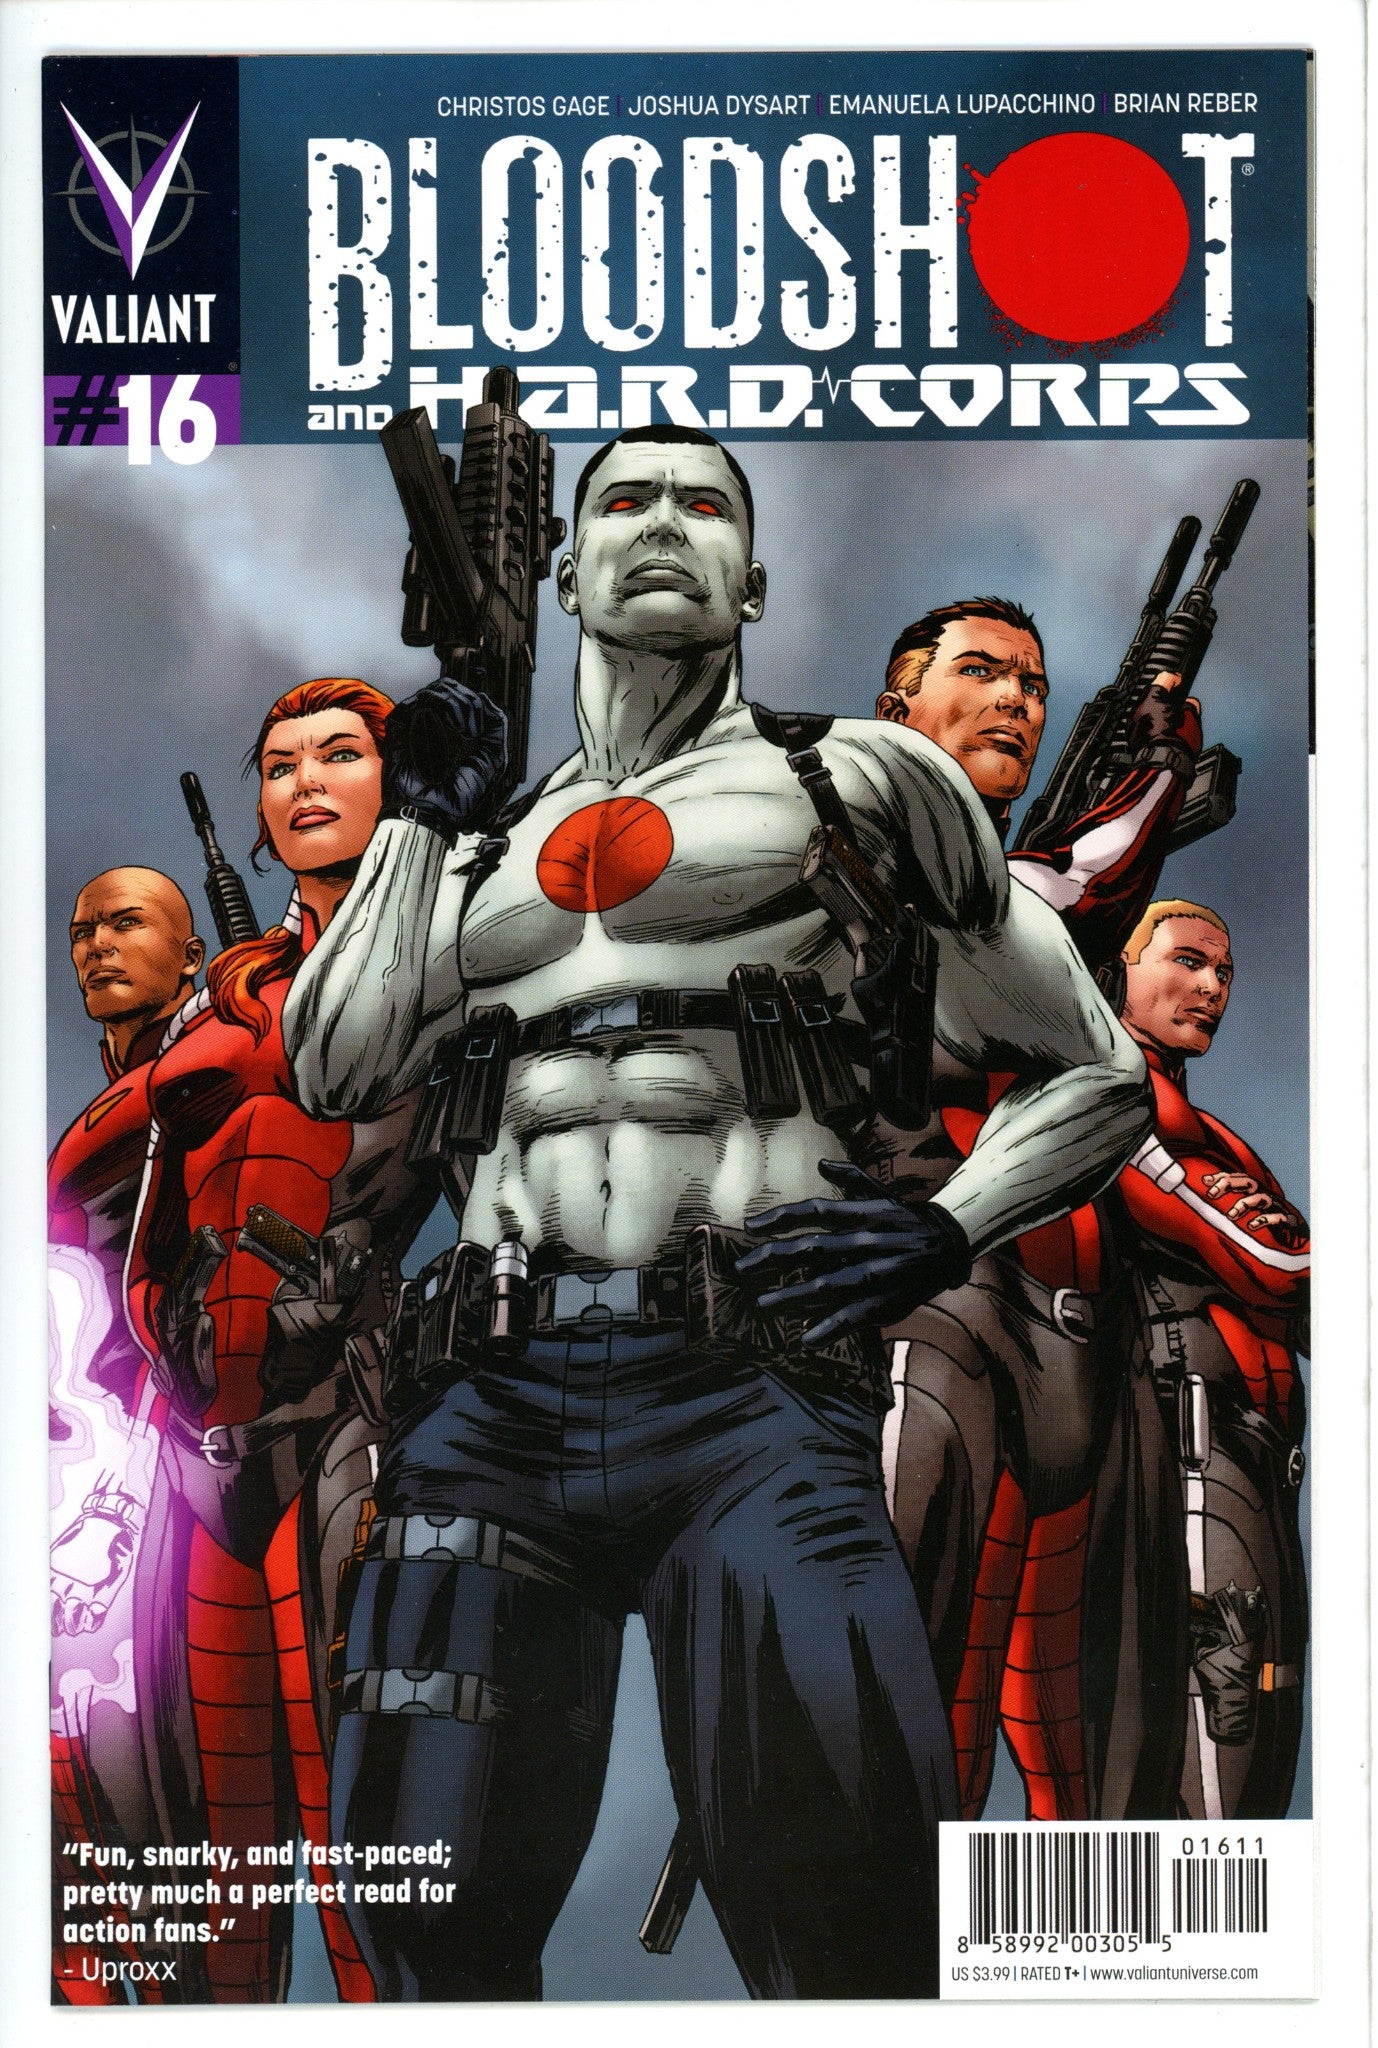 Bloodshot and H.A.R.D.Corps 16-Valiant Entertainment-CaptCan Comics Inc